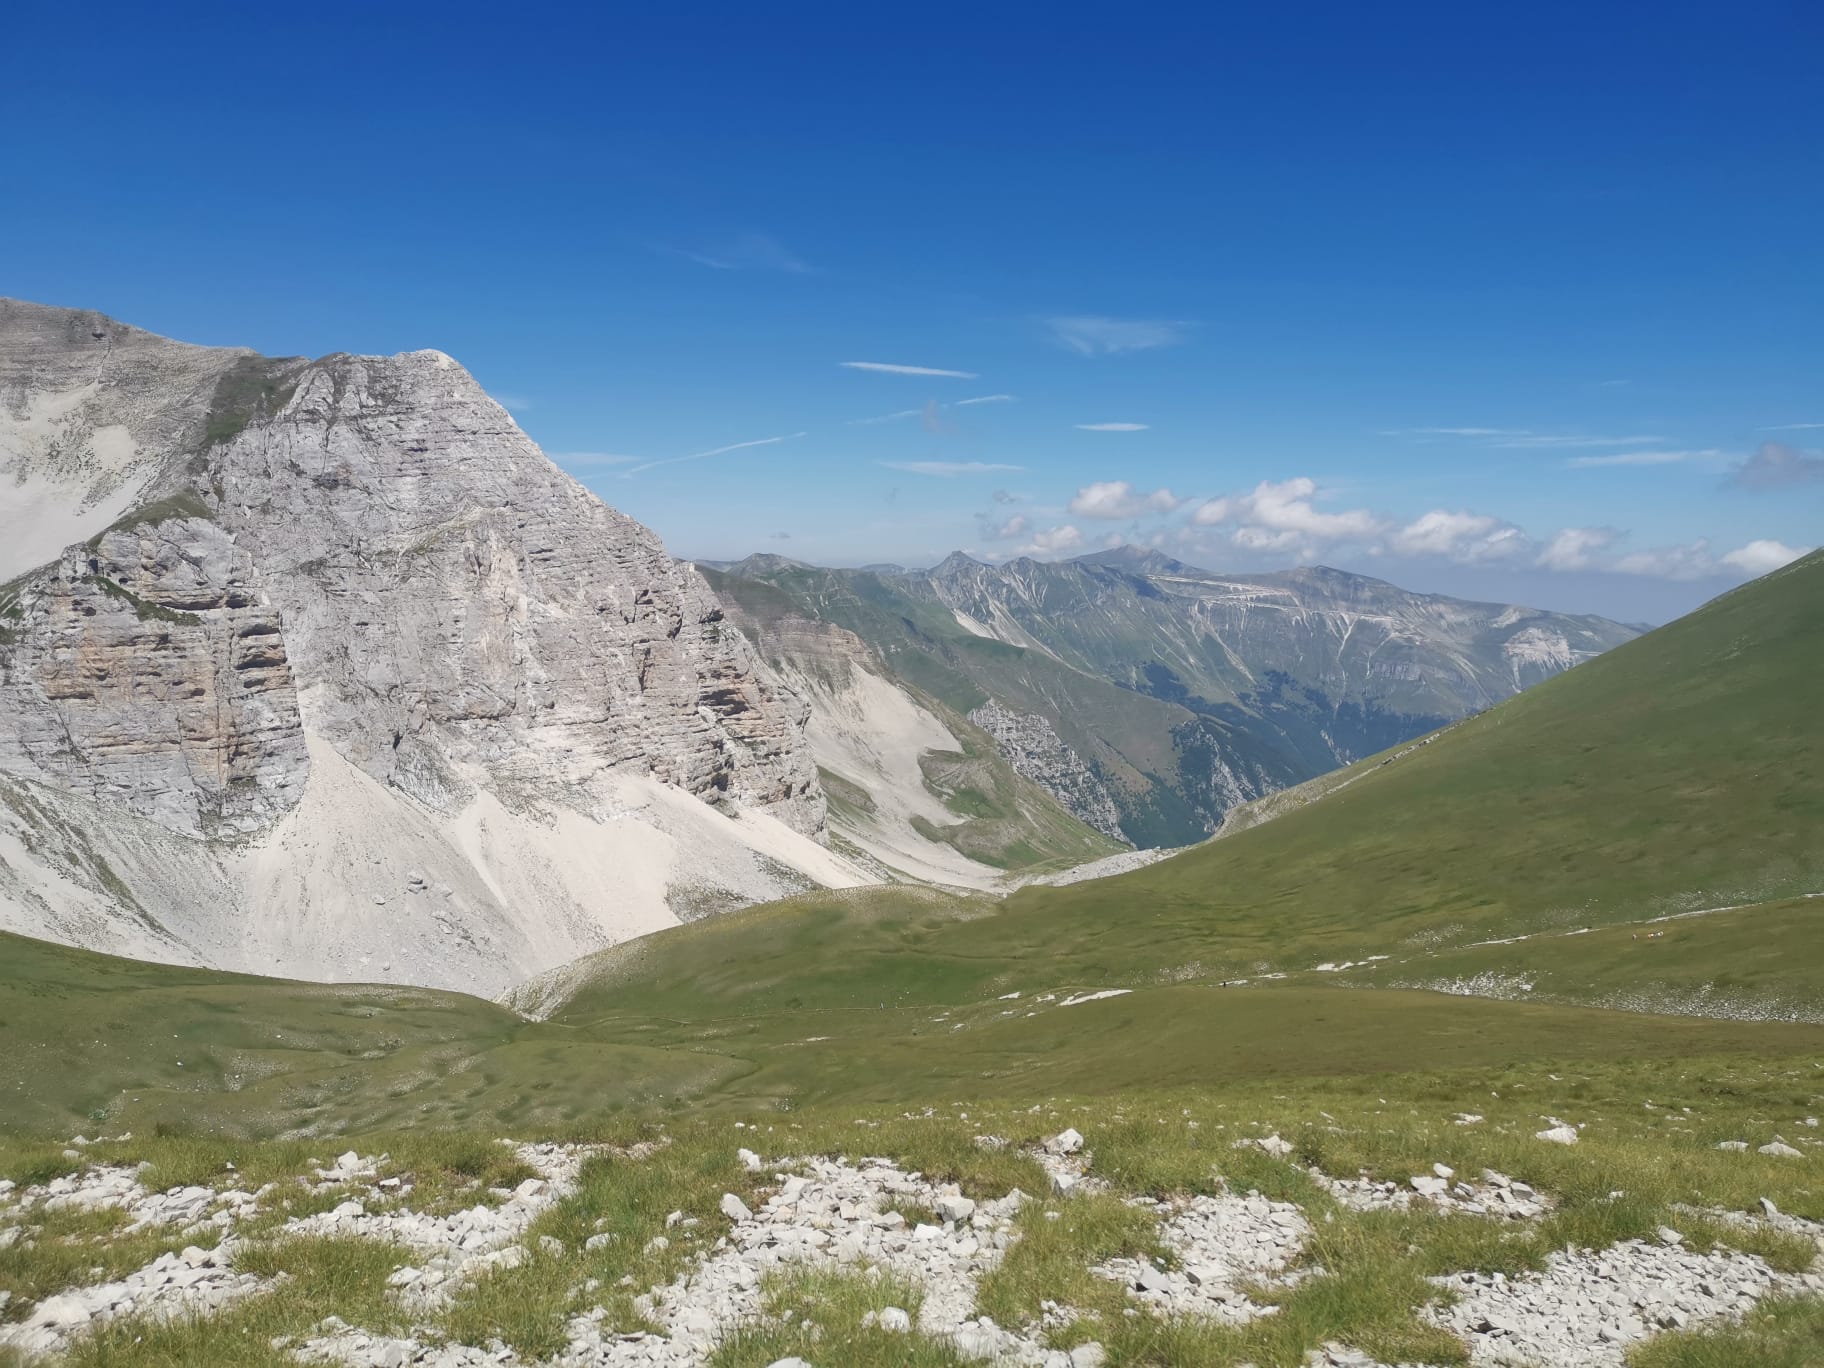 Escursionista disperso sul monte Vettore, ricerche in corso